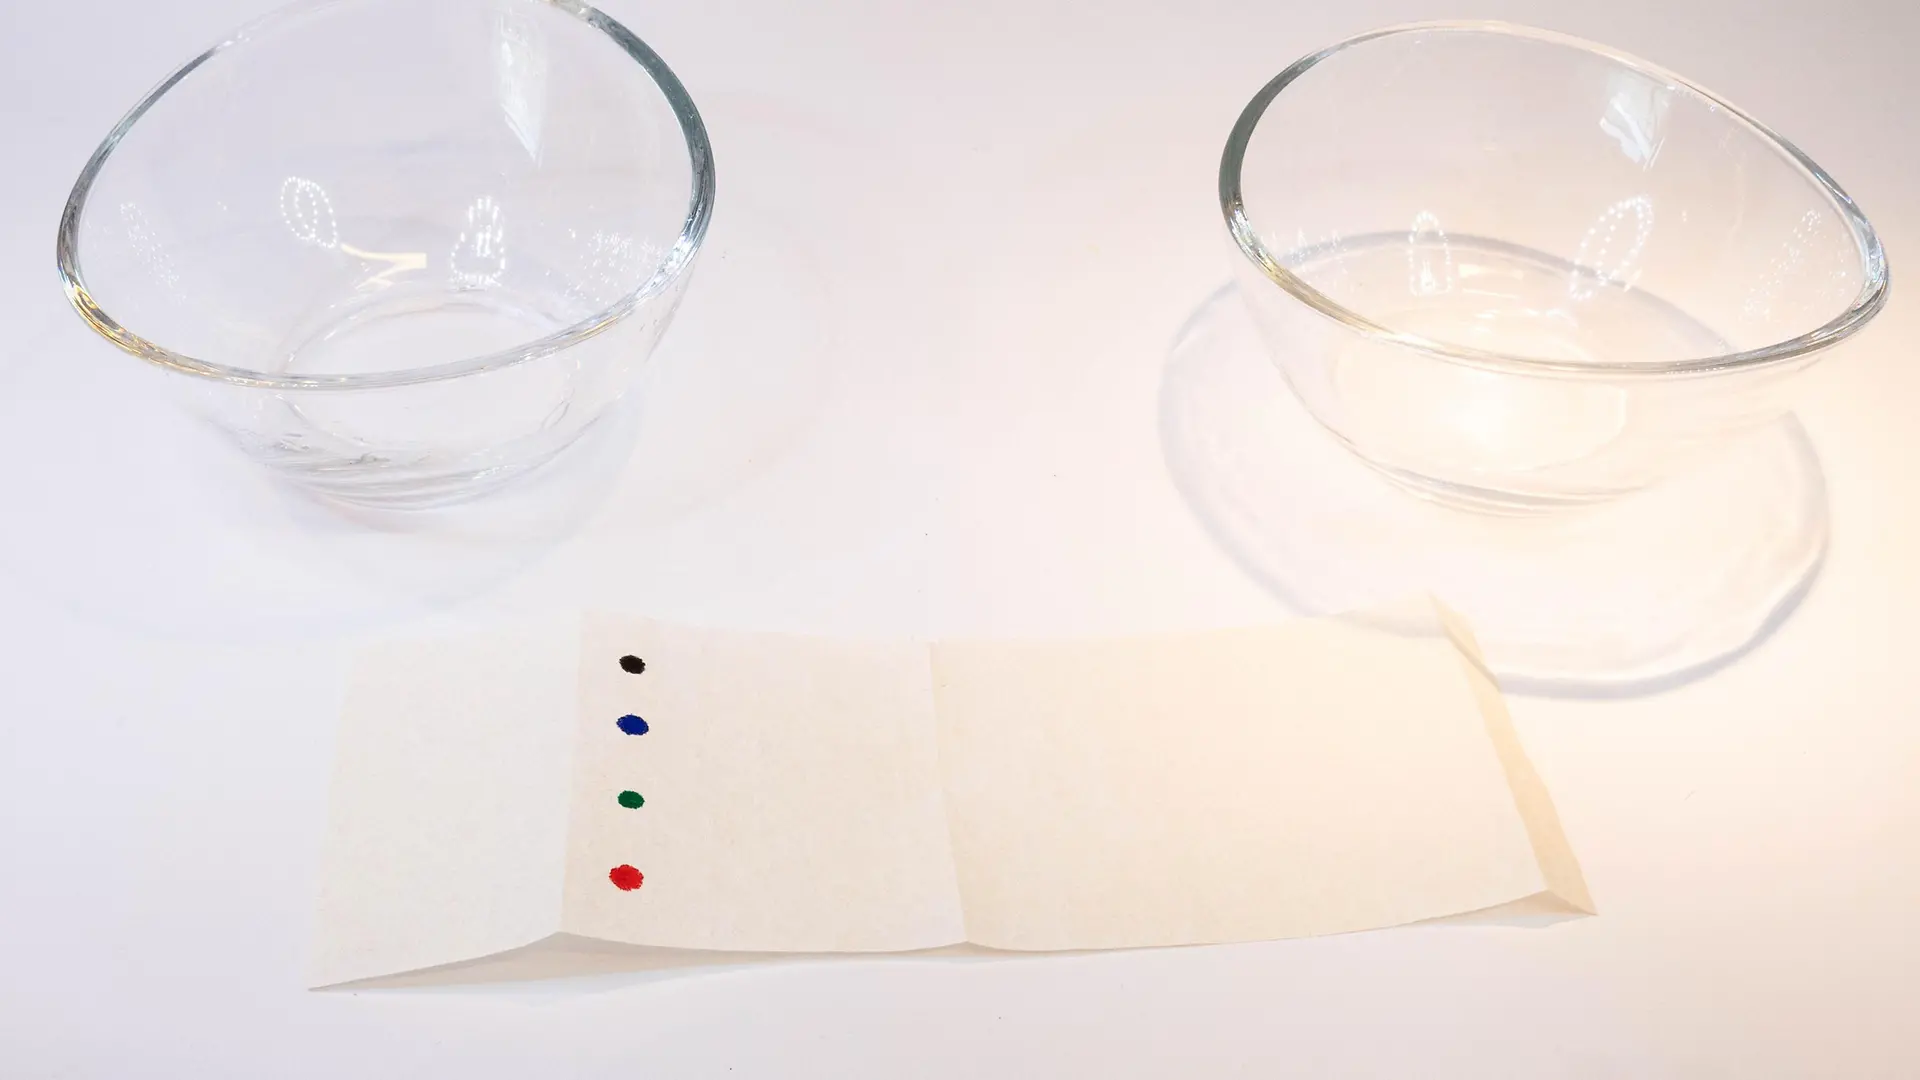 papierowy pasek w kolorowe kropki przed dwiema szklanymi miskami